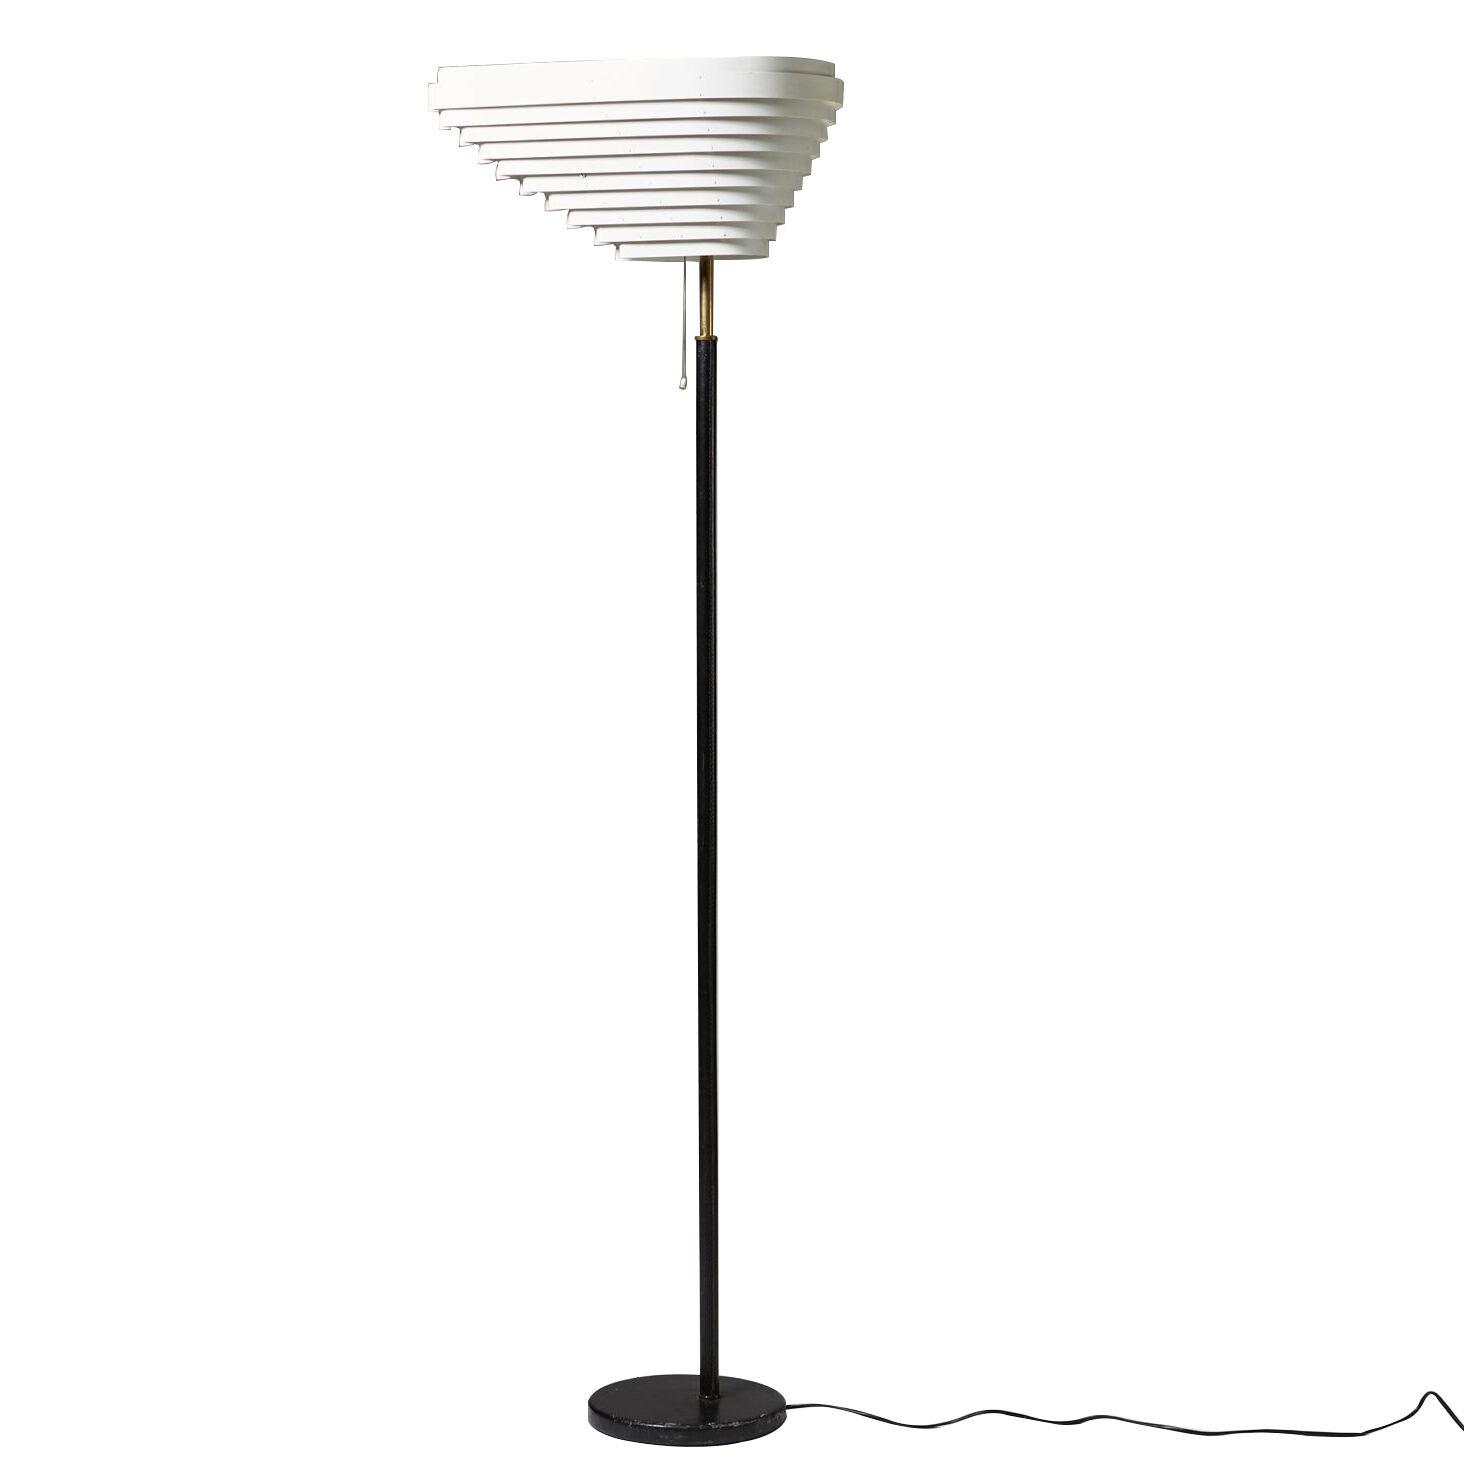 Floor lamp “Angel Wing” designed by Alvar Aalto for Valaistustyö,